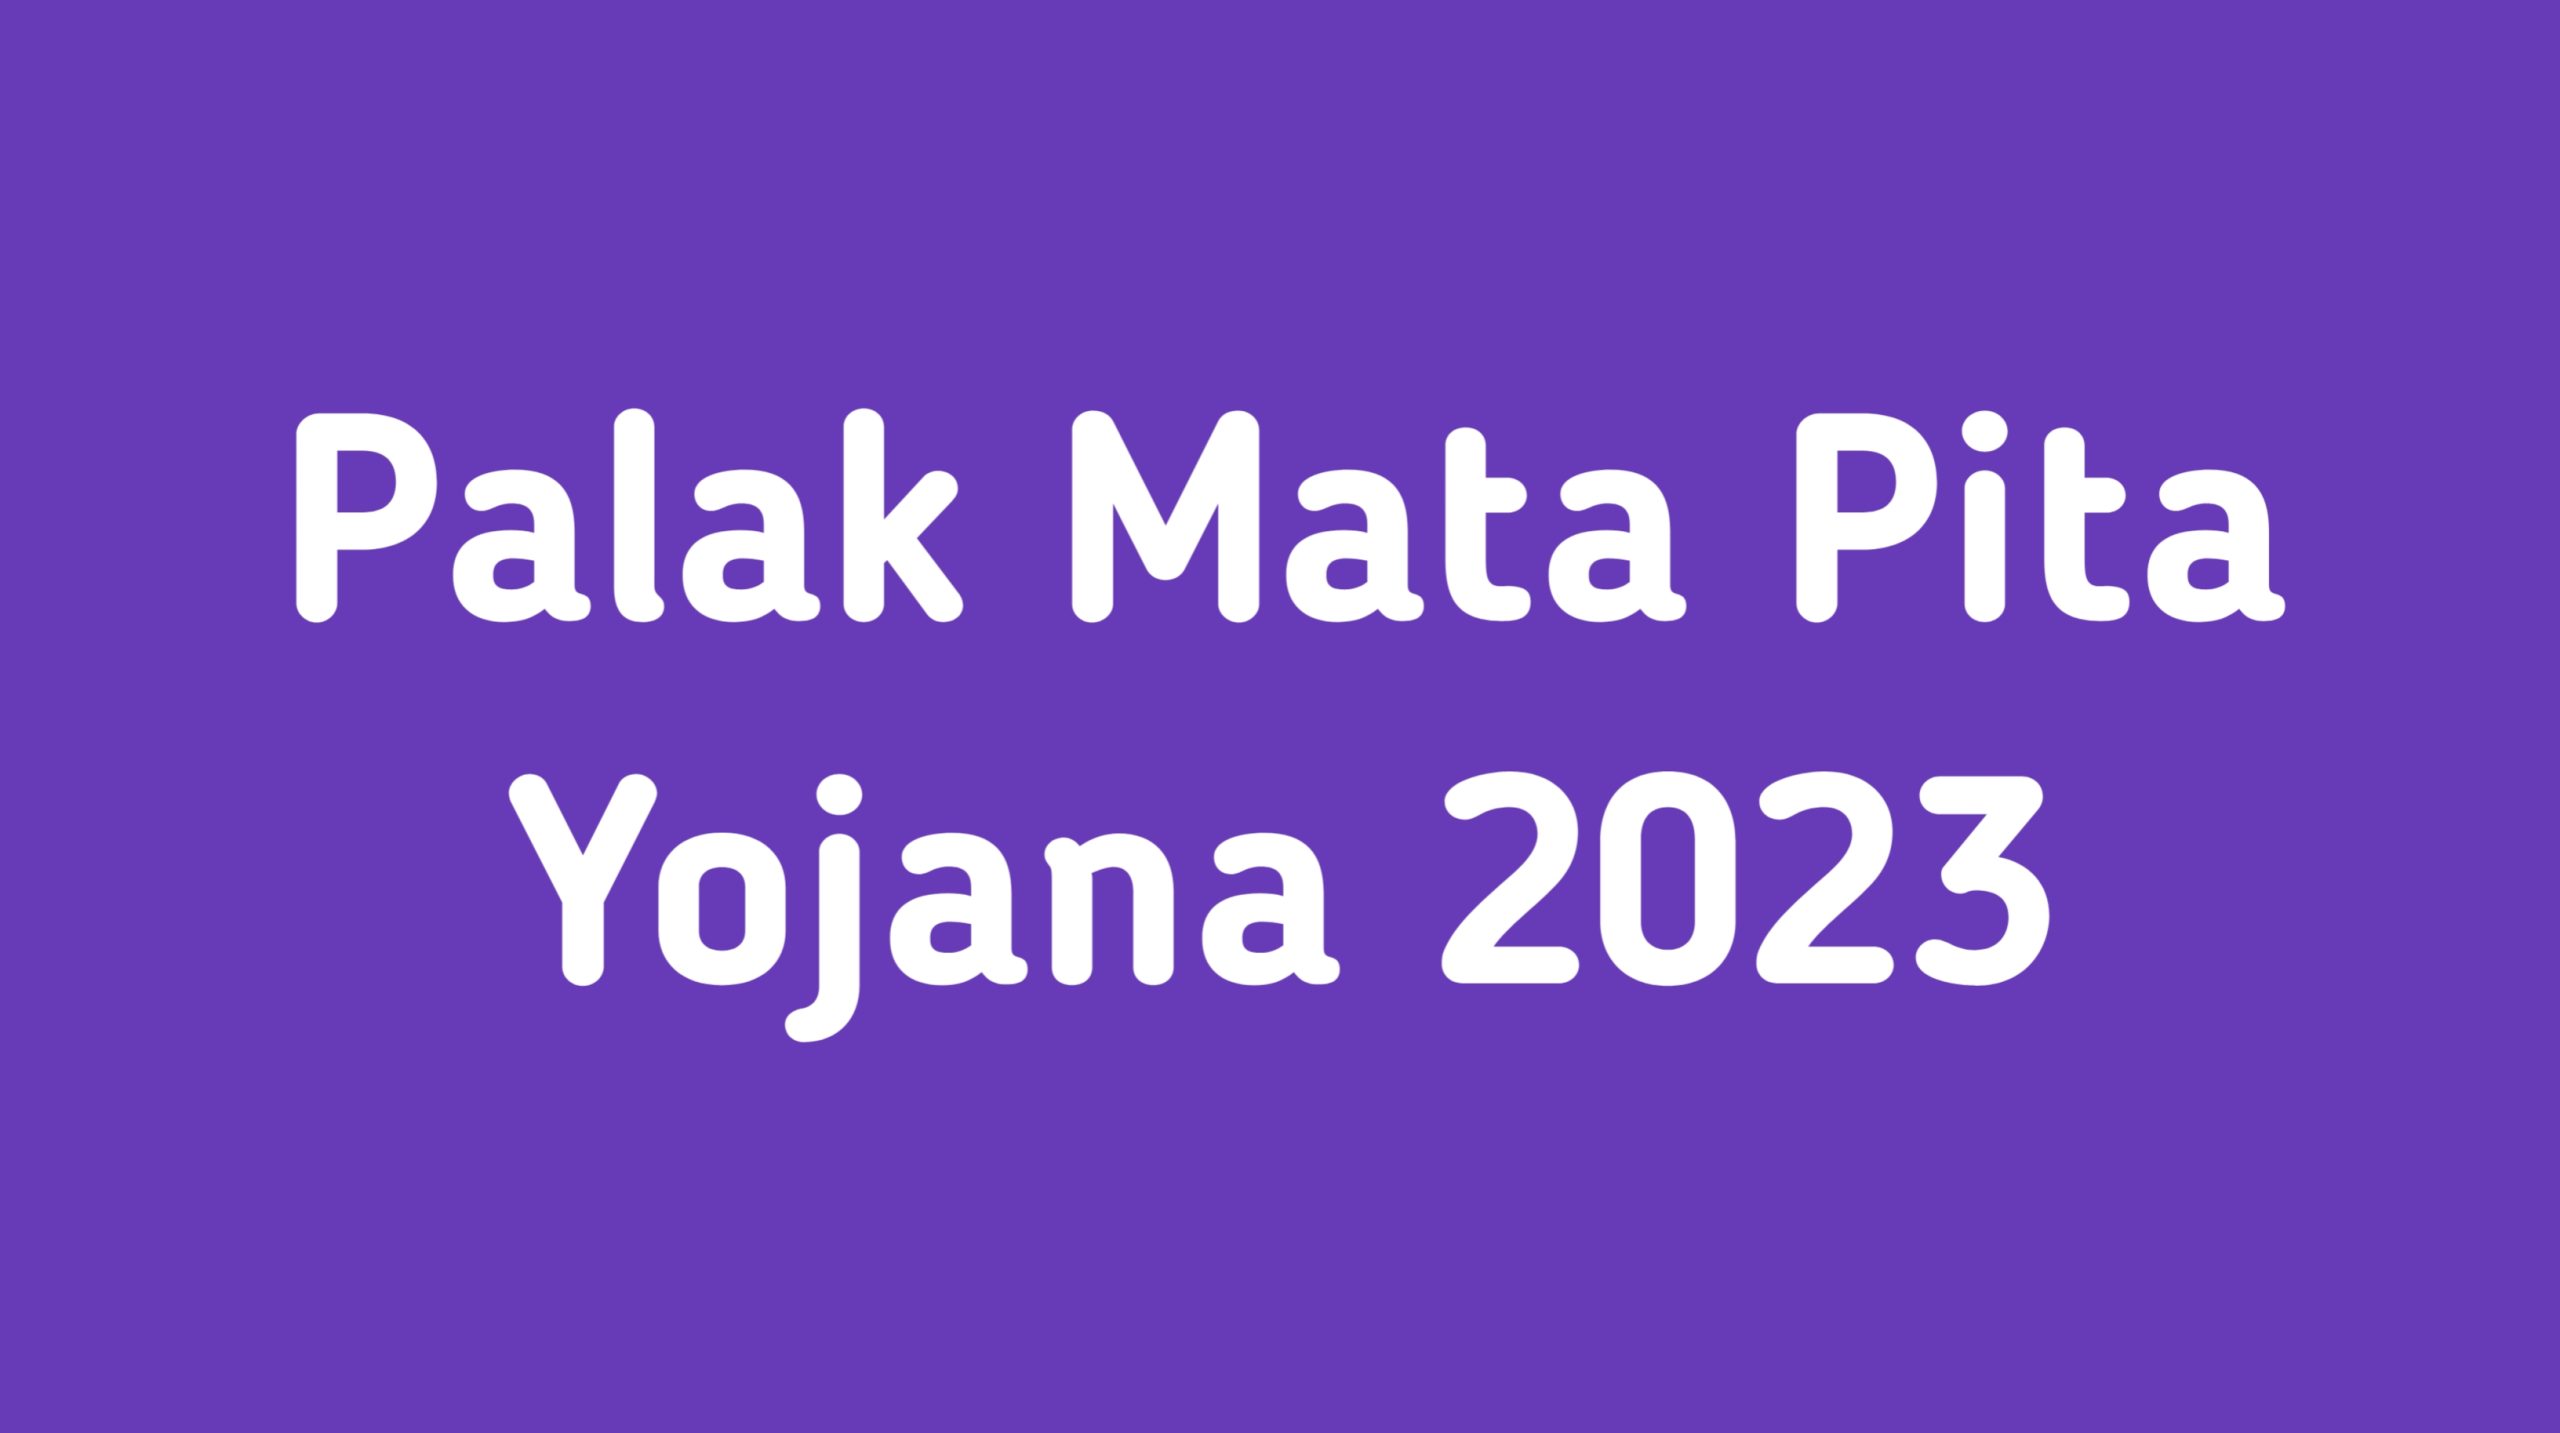 Palak Mata Pita Yojana 2023